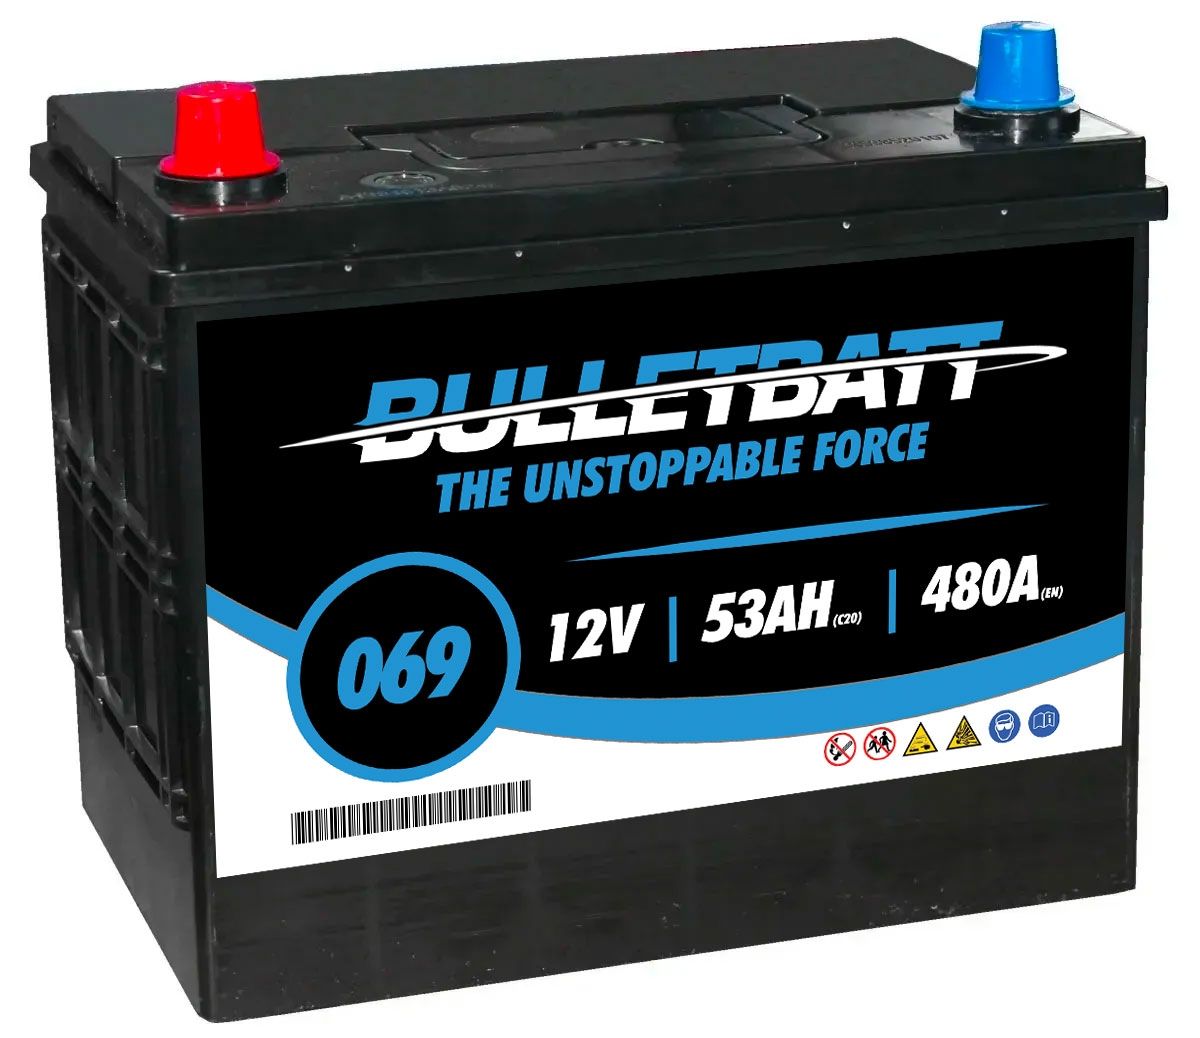 069 BulletBatt Car Battery 12V 